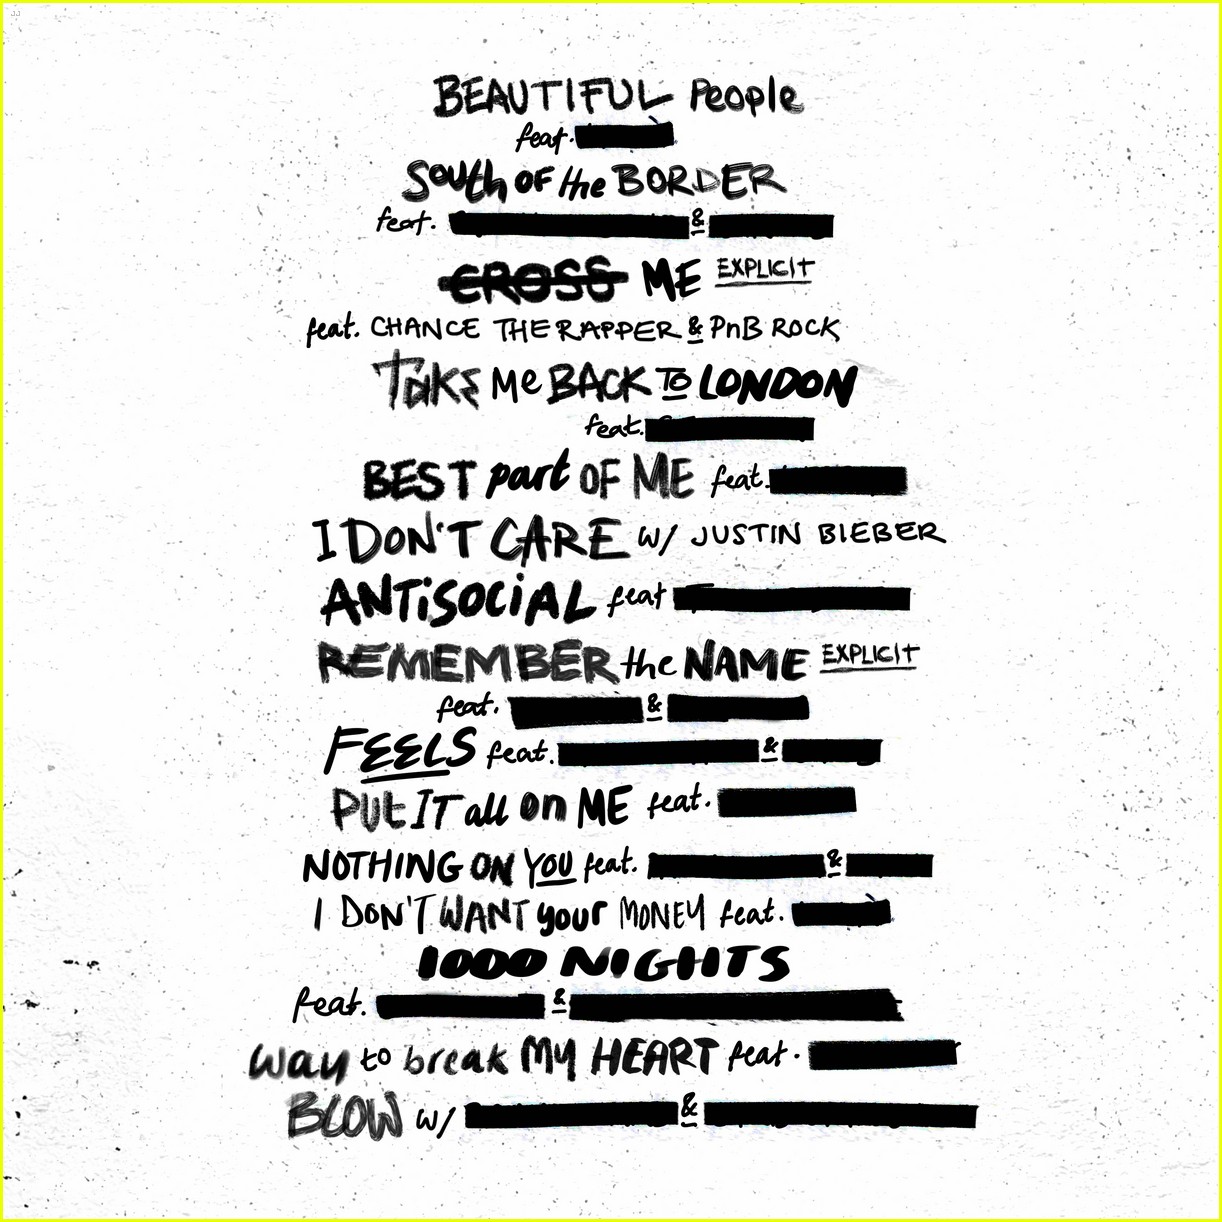 ed sheeran collab album details 02